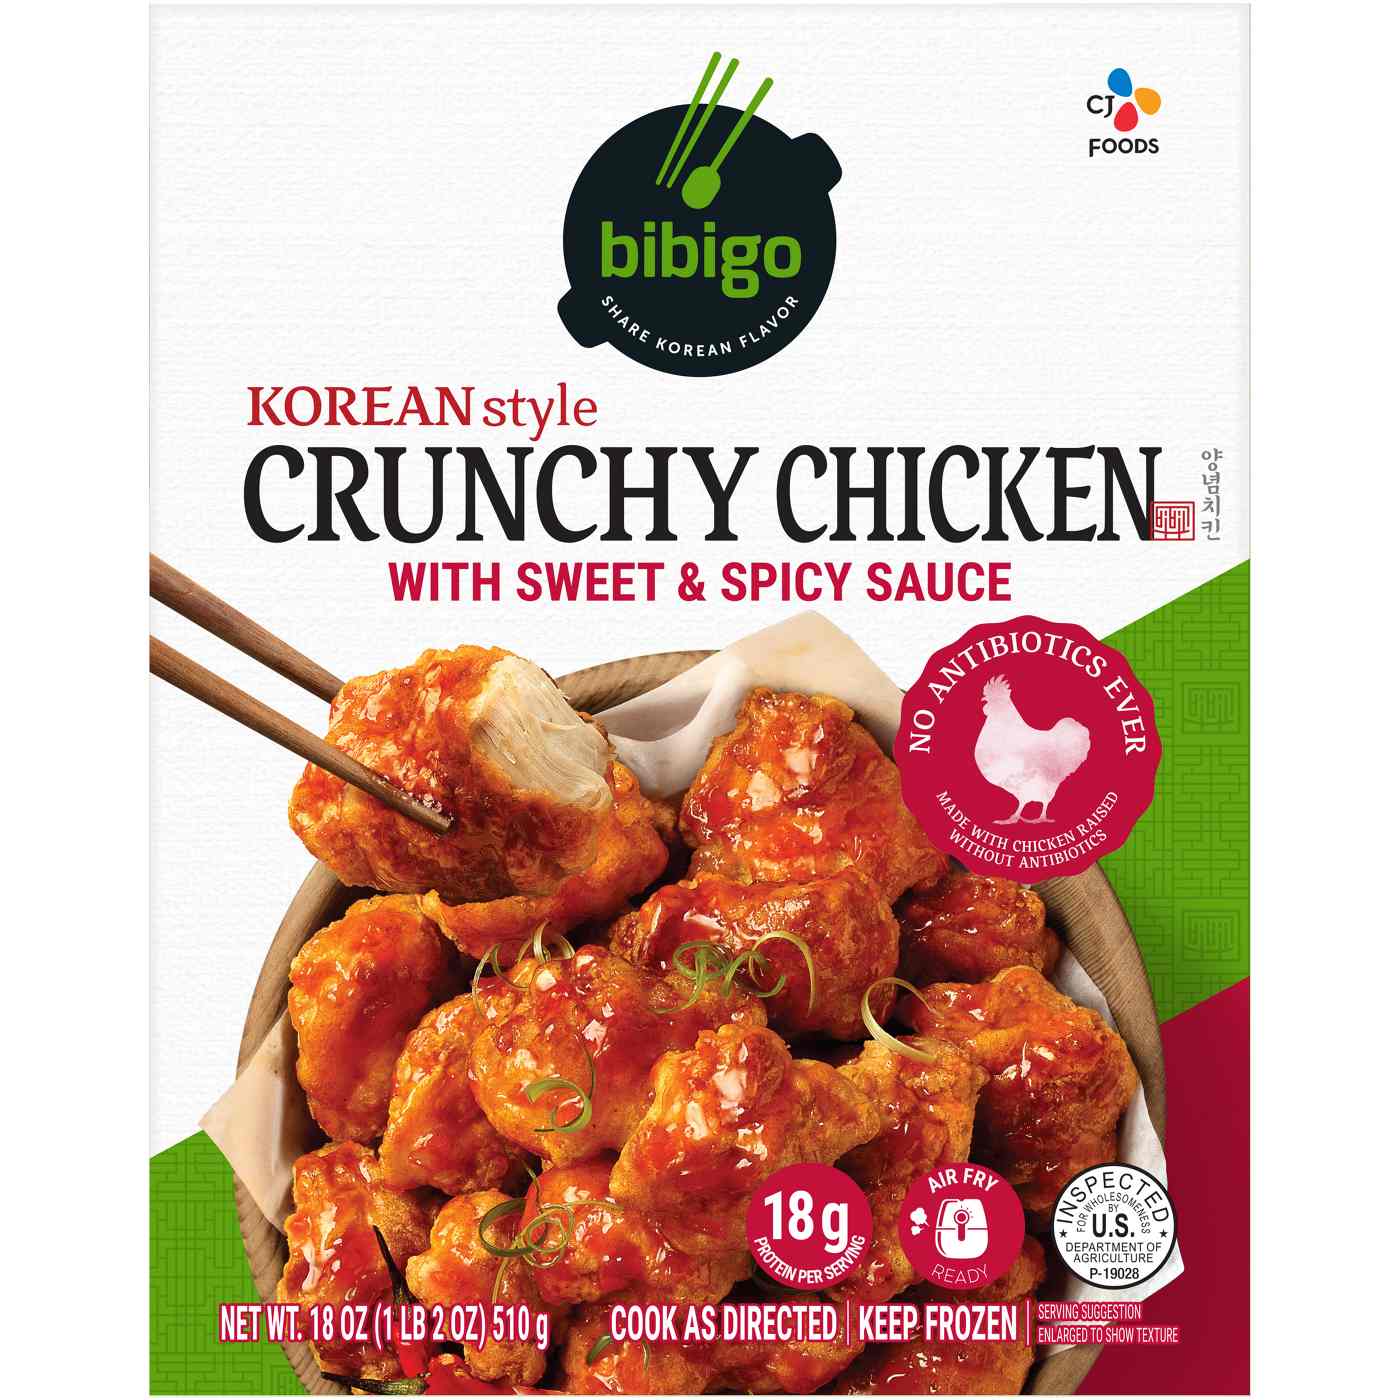 Bibigo Frozen Korean-Style Crunchy Chicken; image 1 of 2